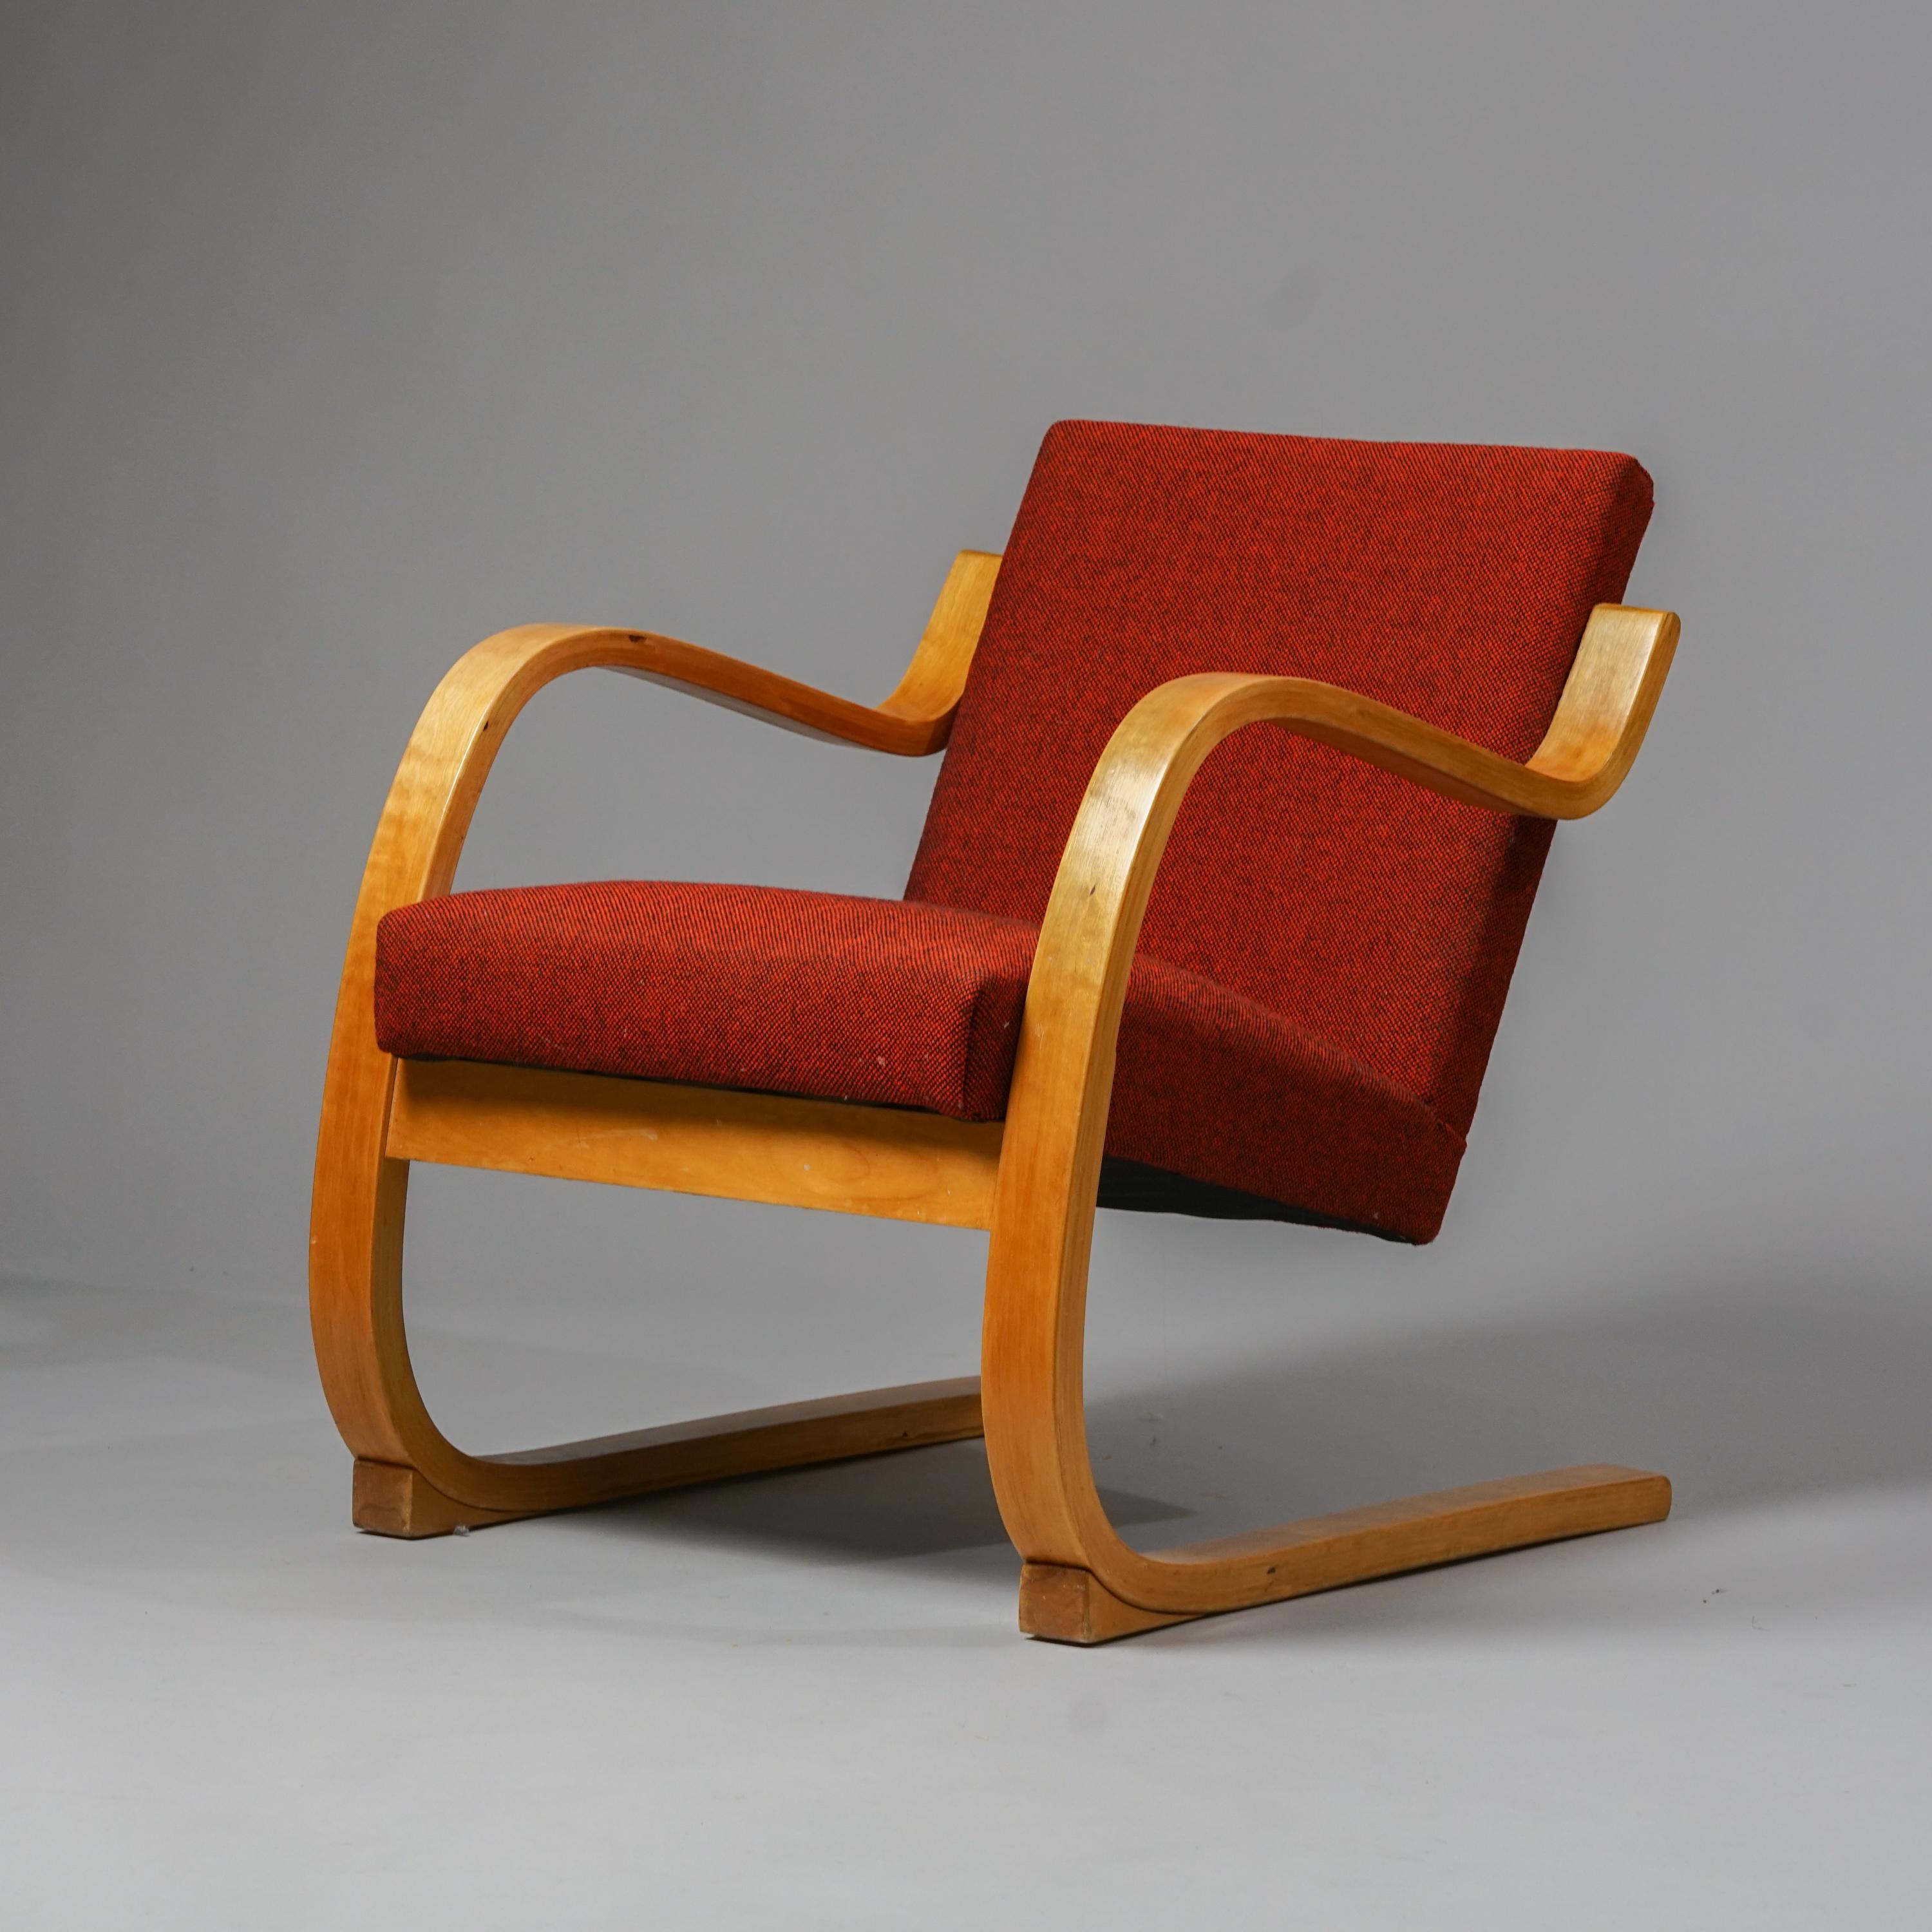 Rare fauteuil modèle 402 d'Alvar Aalto pour Artek des années 1950 avec des cales sur les pieds. Pieds en bouleau laqué, revêtement en tissu de laine rouge. Bon état vintage, usure mineure correspondant à l'âge et à l'utilisation. Belle patine sur